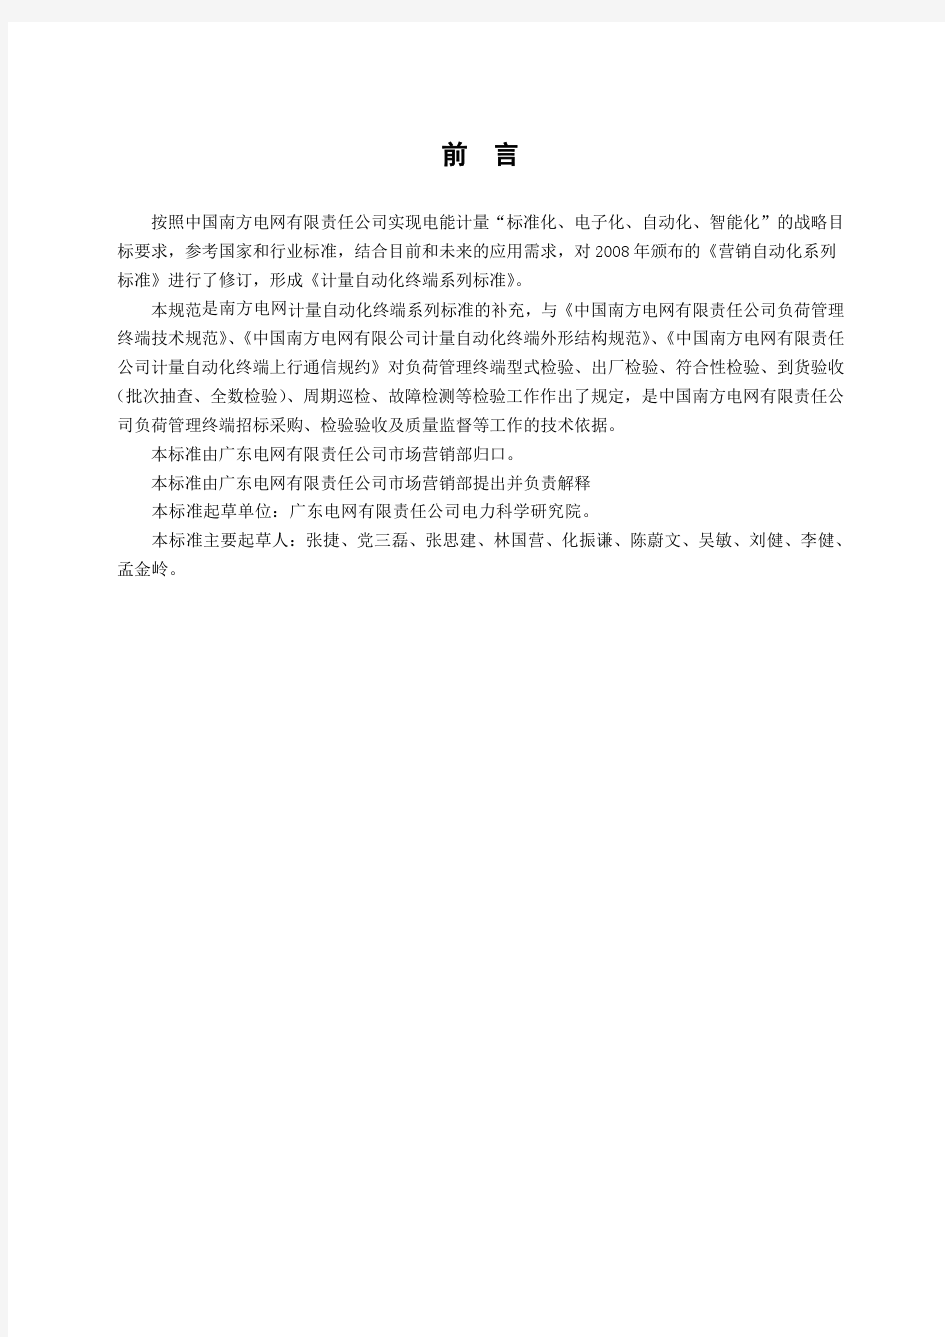 广东电网有限责任公司负荷管理终端检验技术规范(2016版)